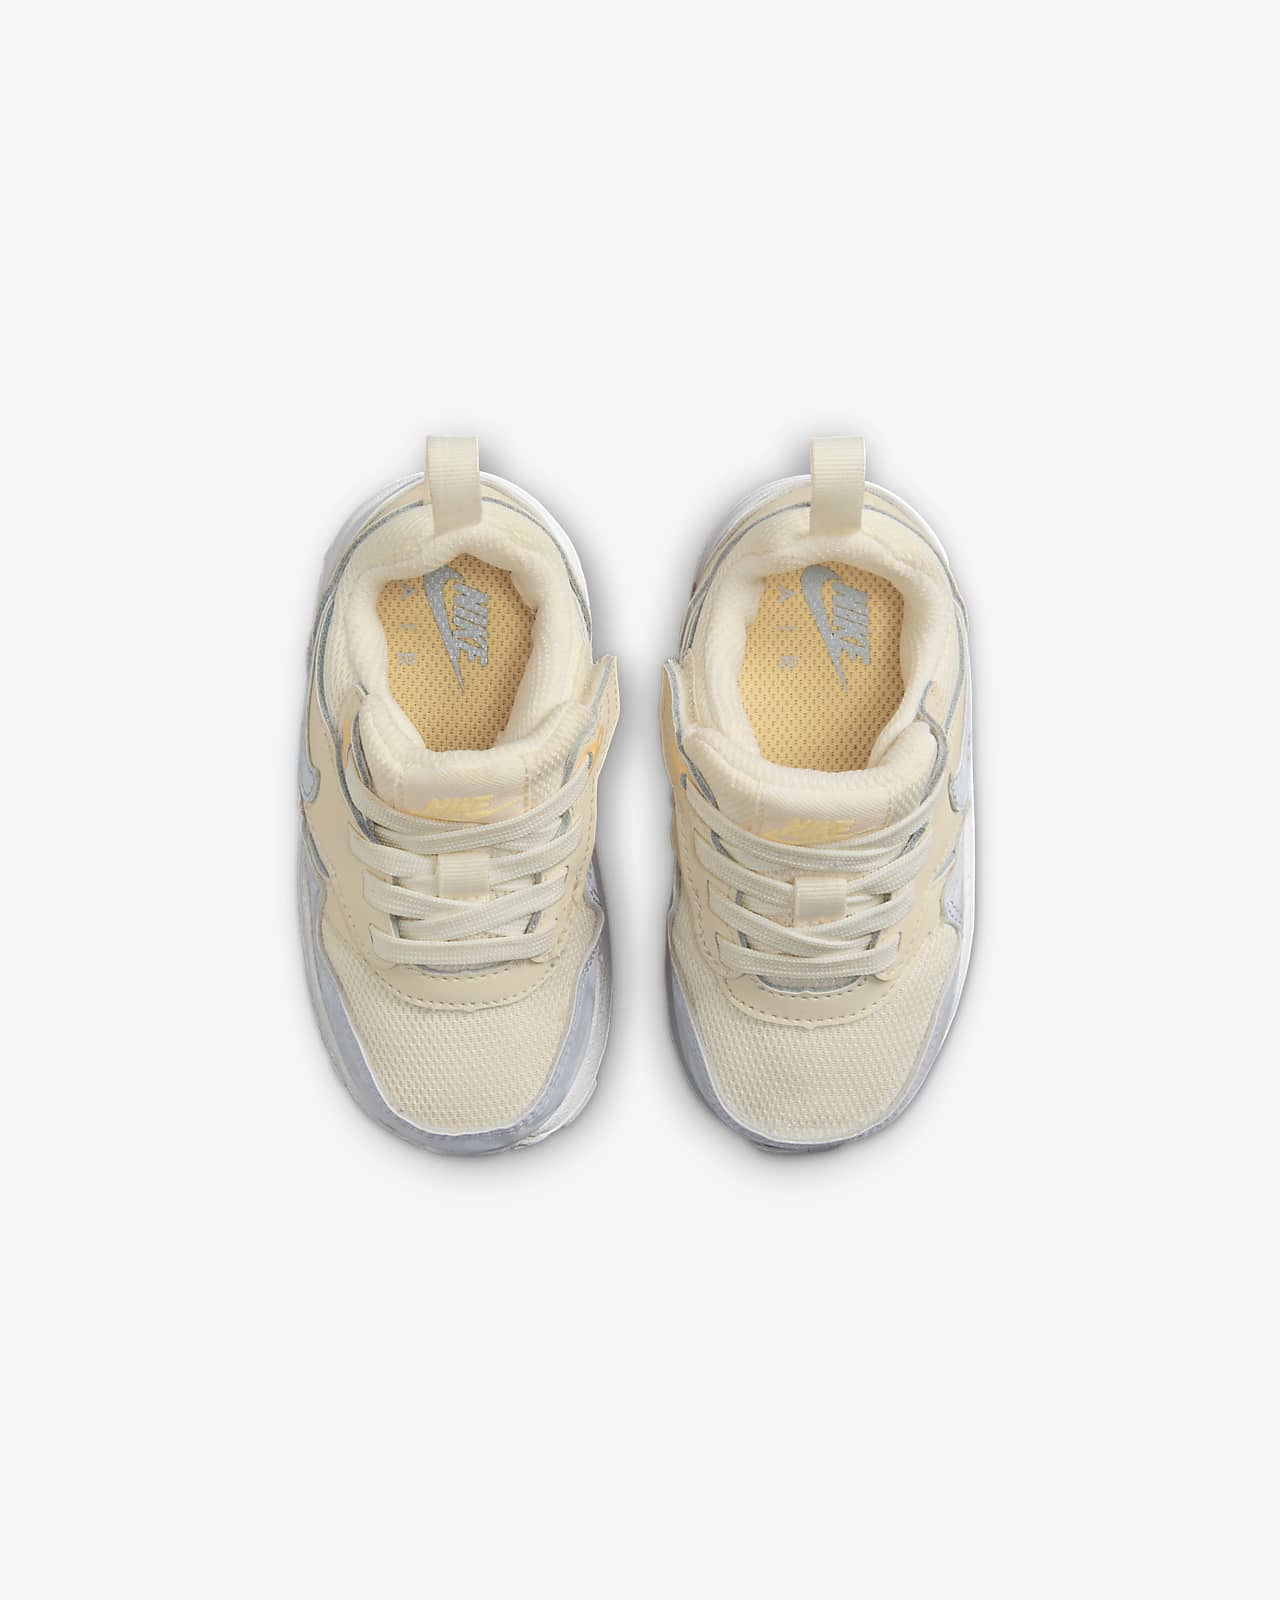 Chaussure Nike bébé garçon AIR MAX SYSTM blanc/marine